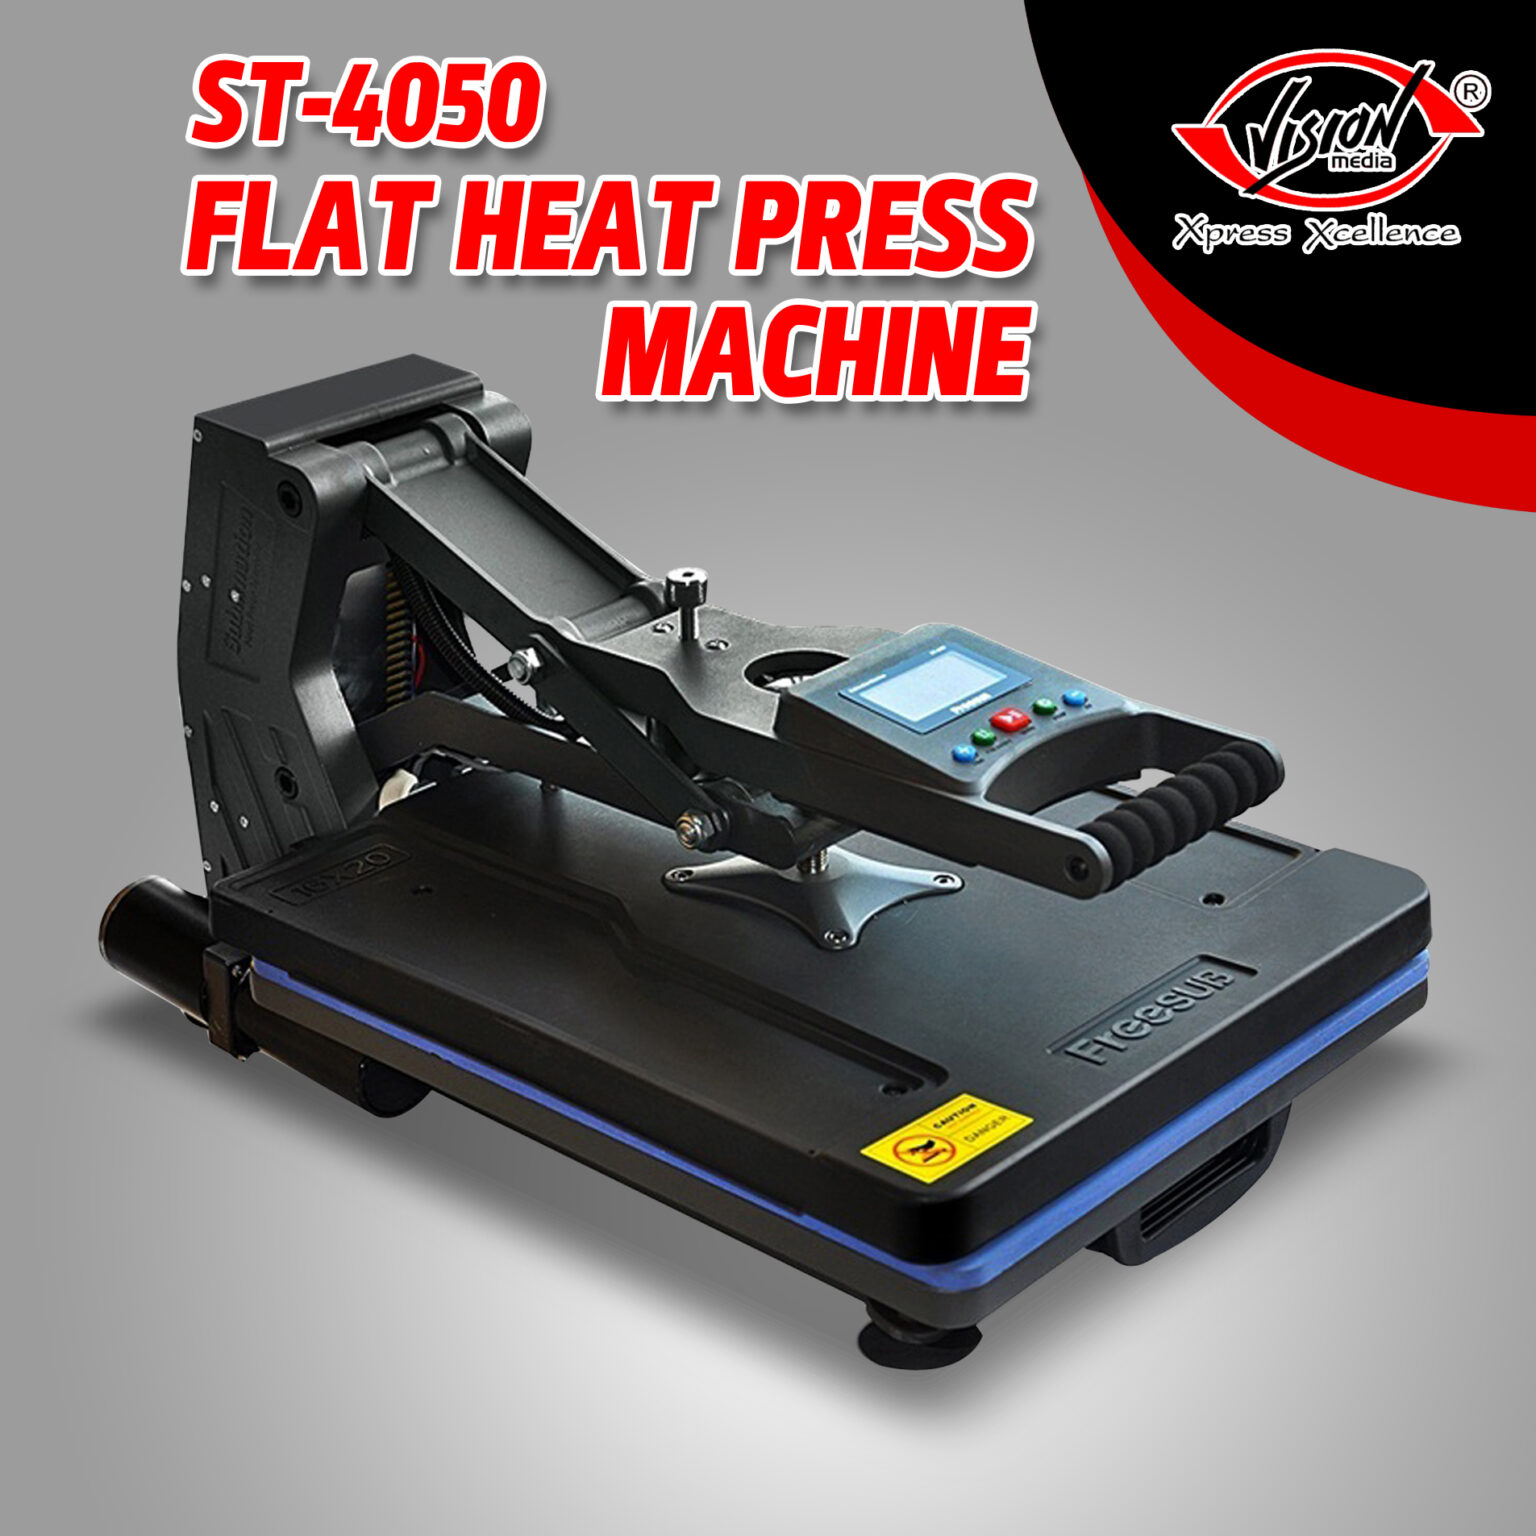 FLAT PRESS 40 X 50 MACHINE